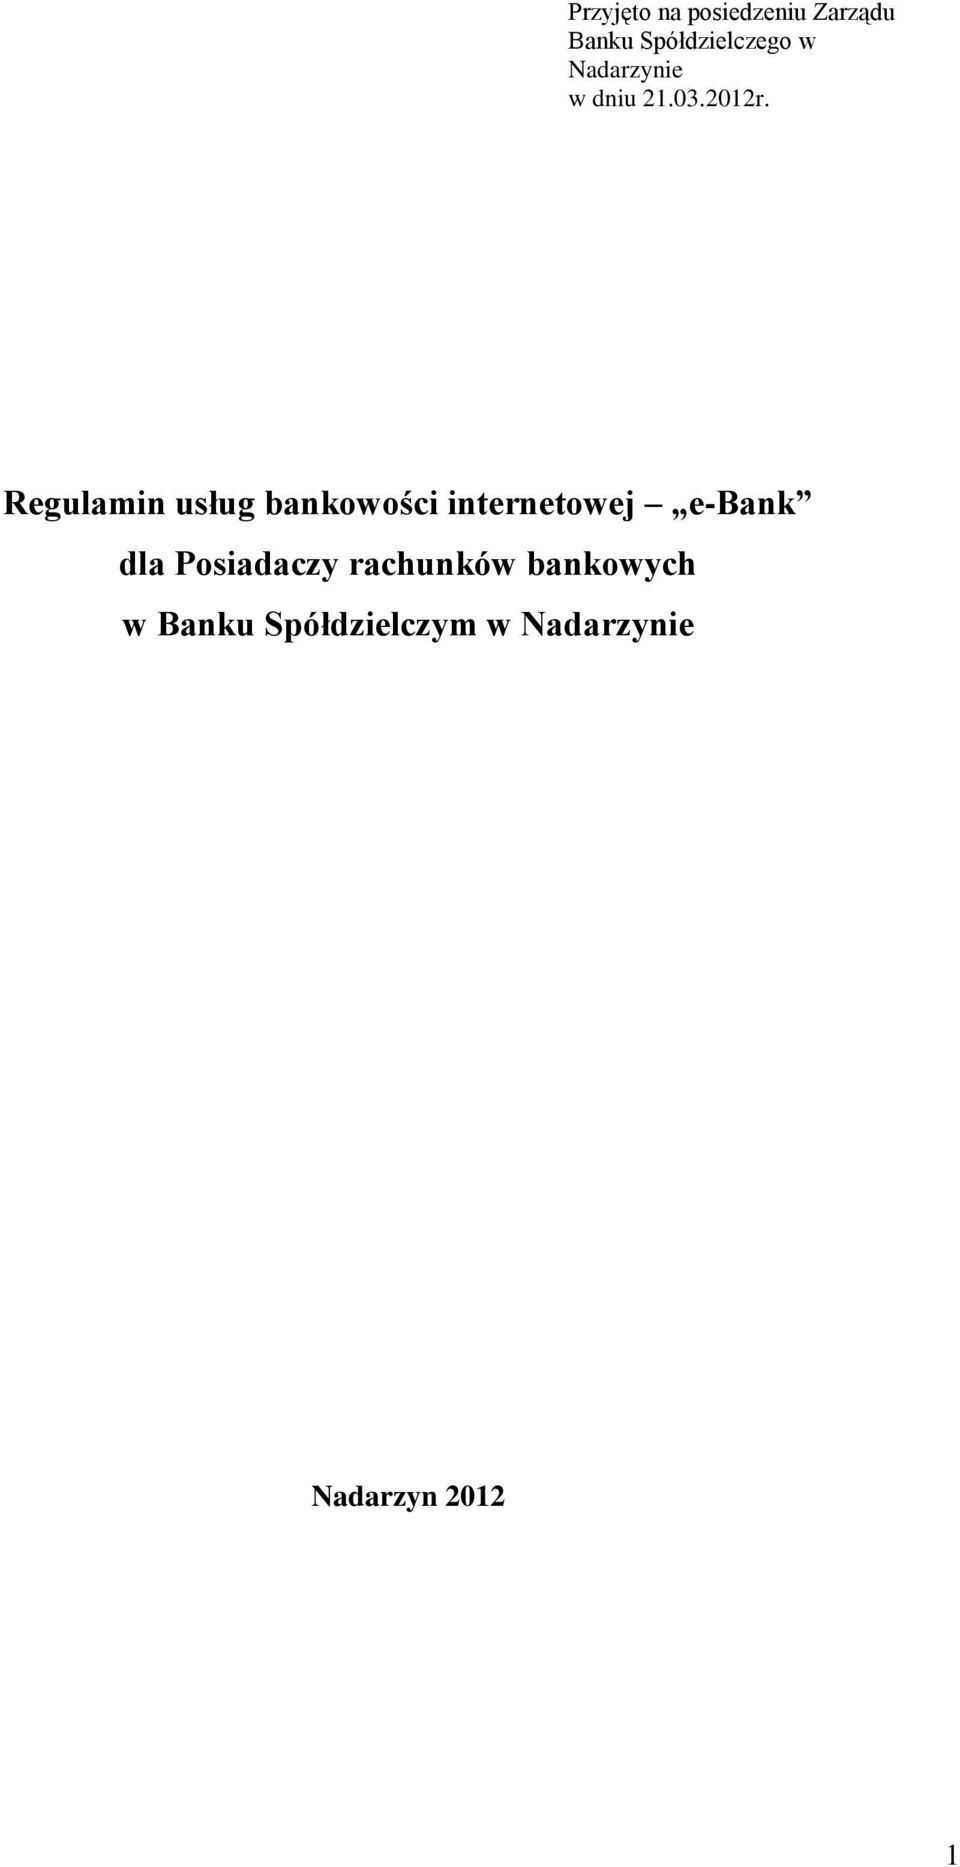 Regulamin usług bankowości internetowej e-bank dla